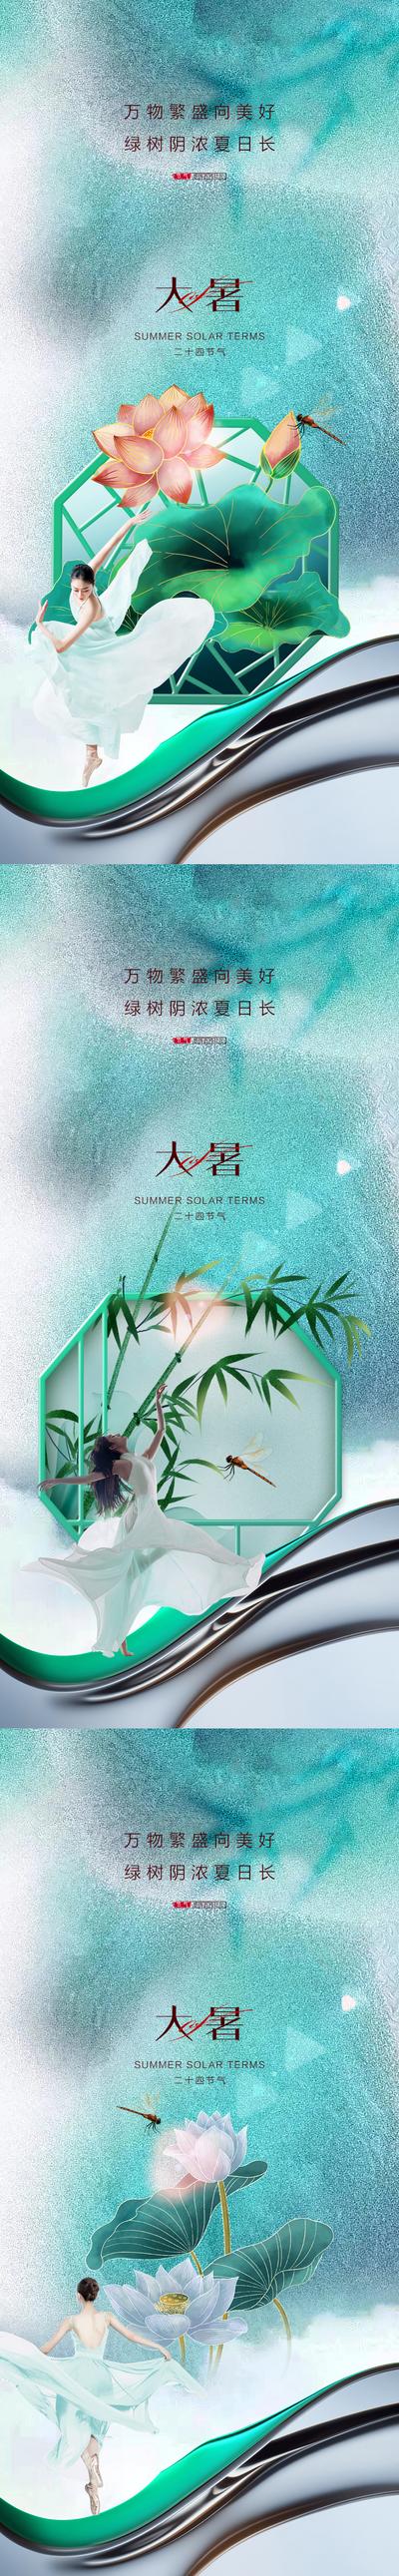 【南门网】广告 海报 地产 大暑 医美 人物 荷花 竹叶 系列 小暑